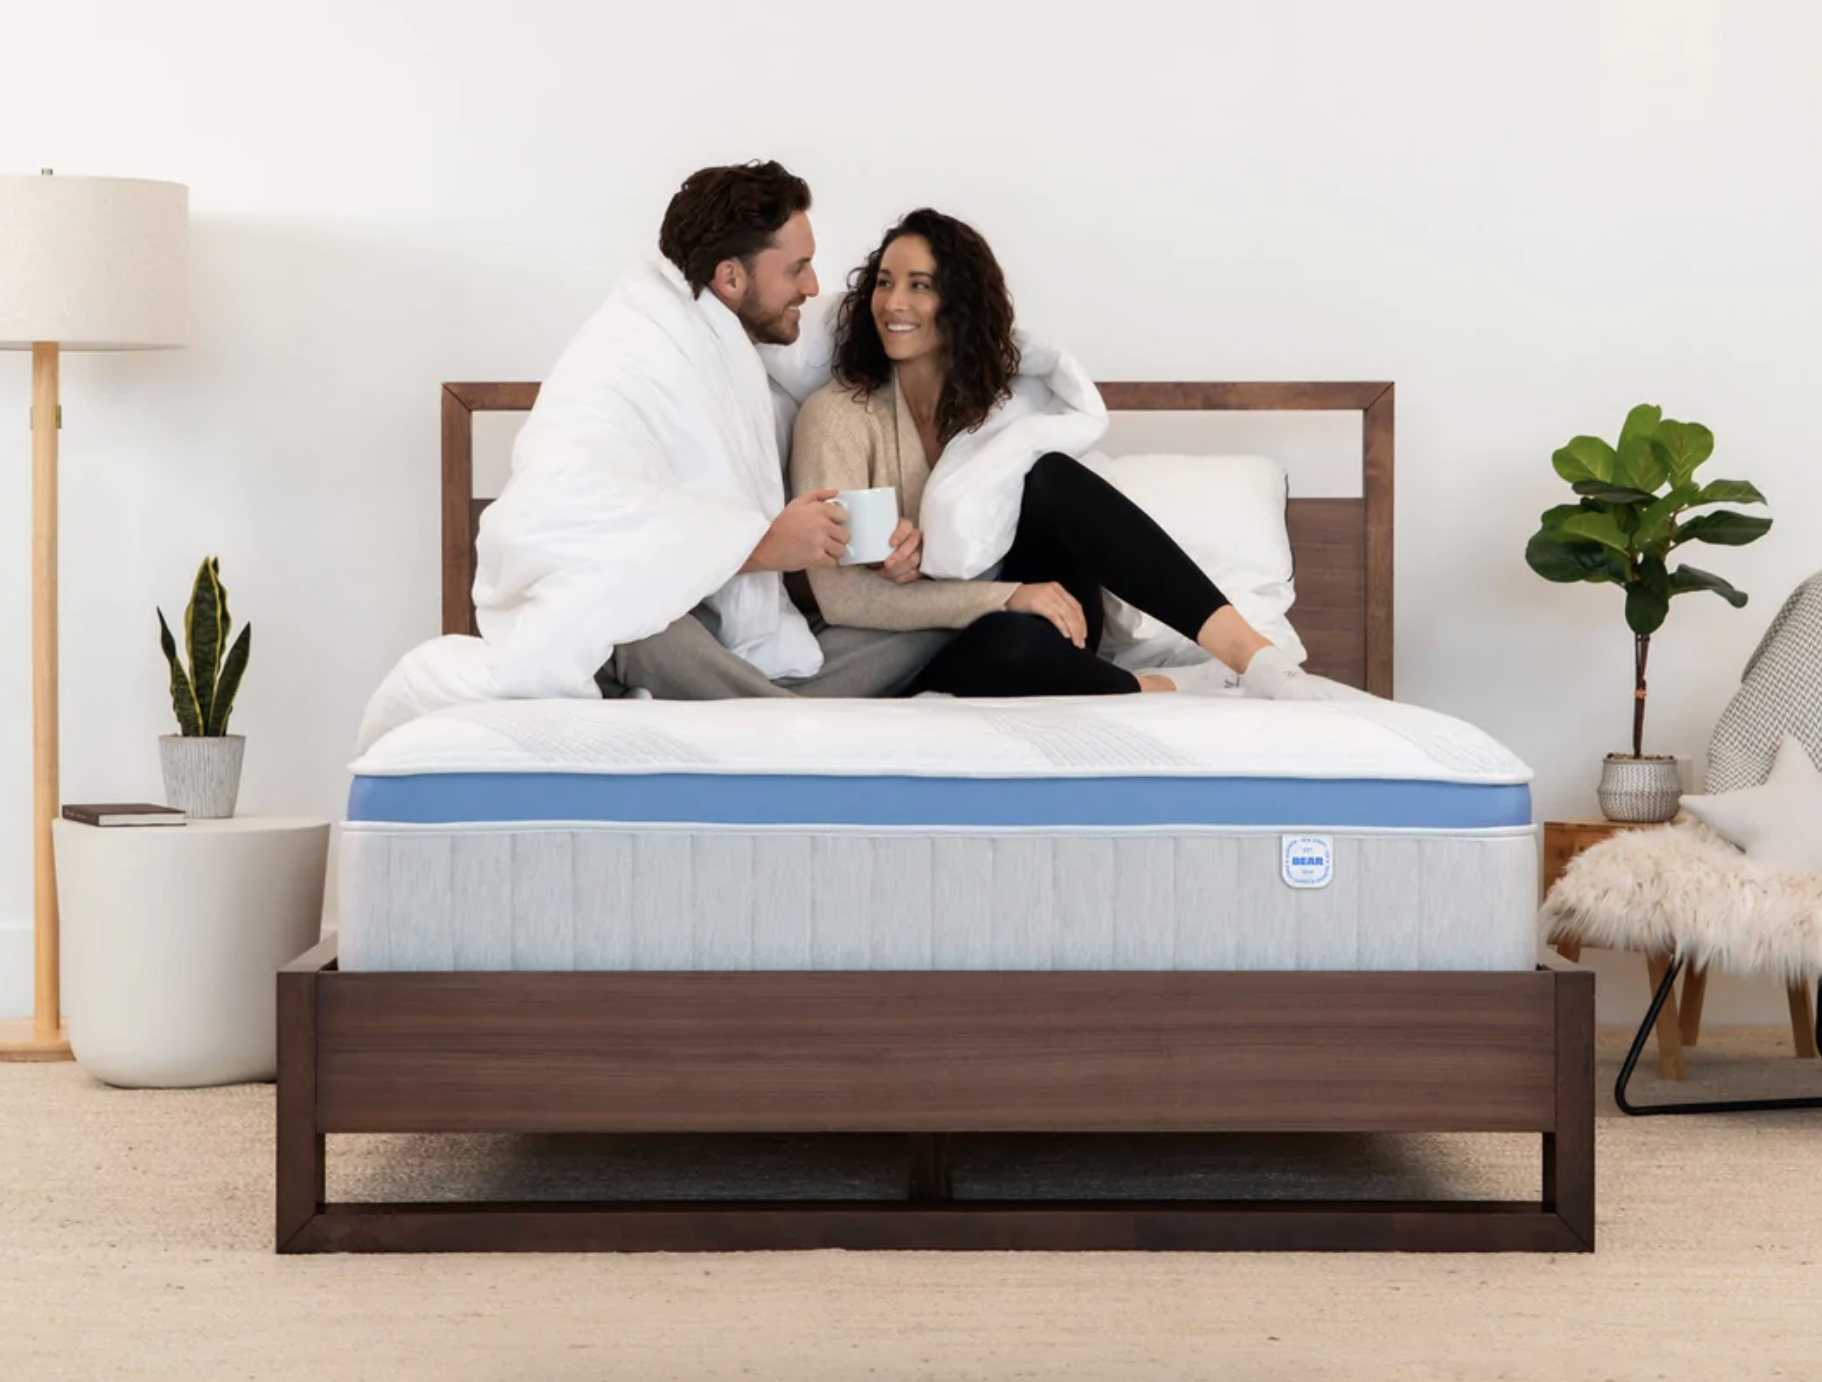 A mattress is shown